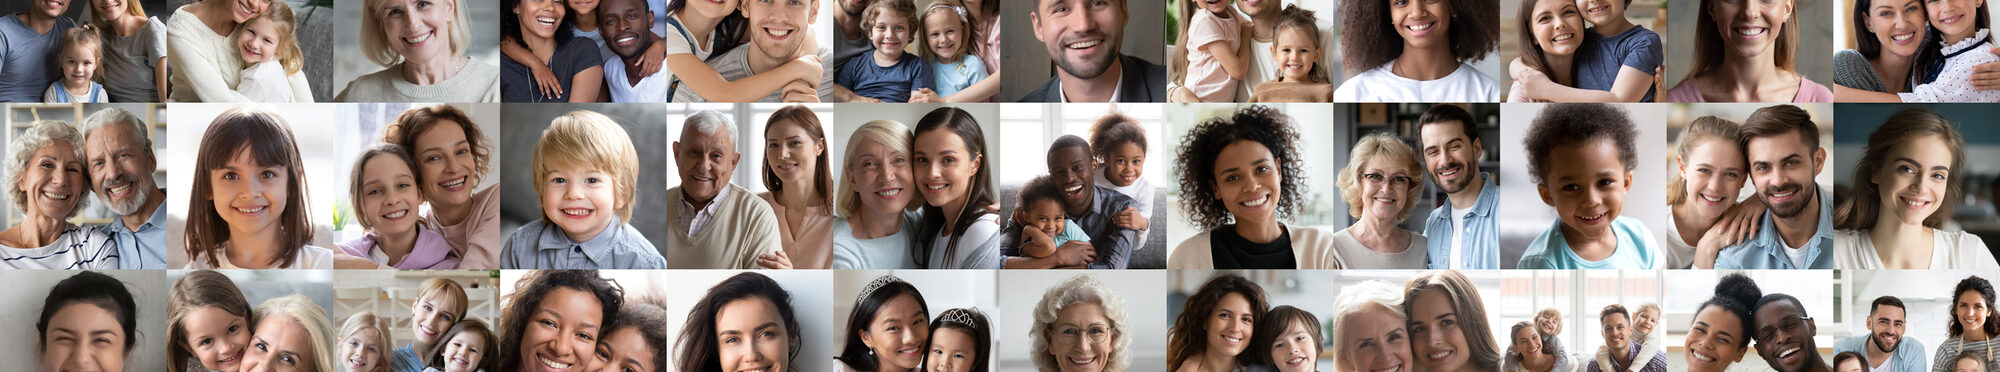 Bild zeigt verschiedene Generationen und Menschen verschiedener Hautfarben